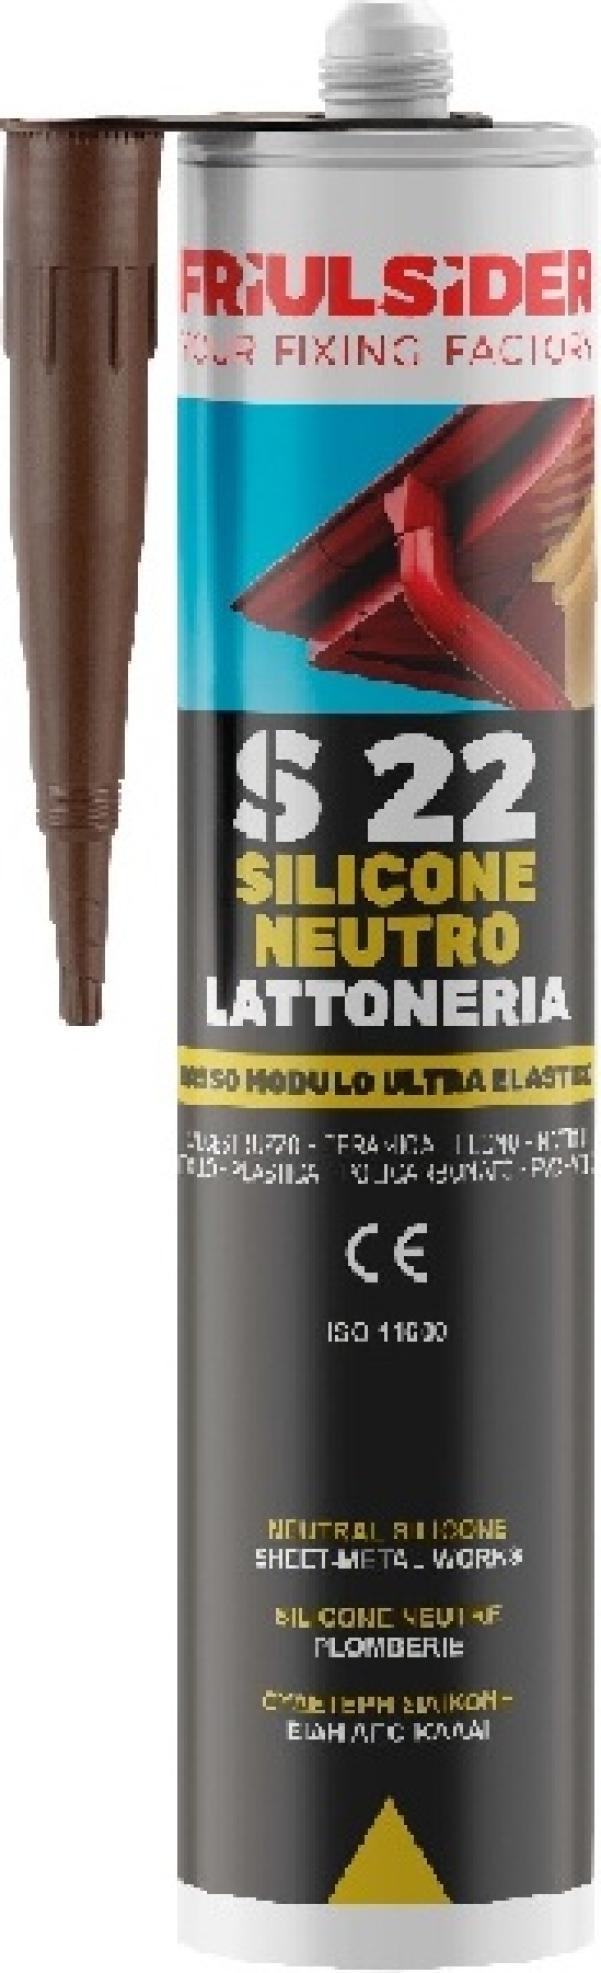 Silicone neutro lattoneria grigio ral7004 310 ml Friulsider S2203